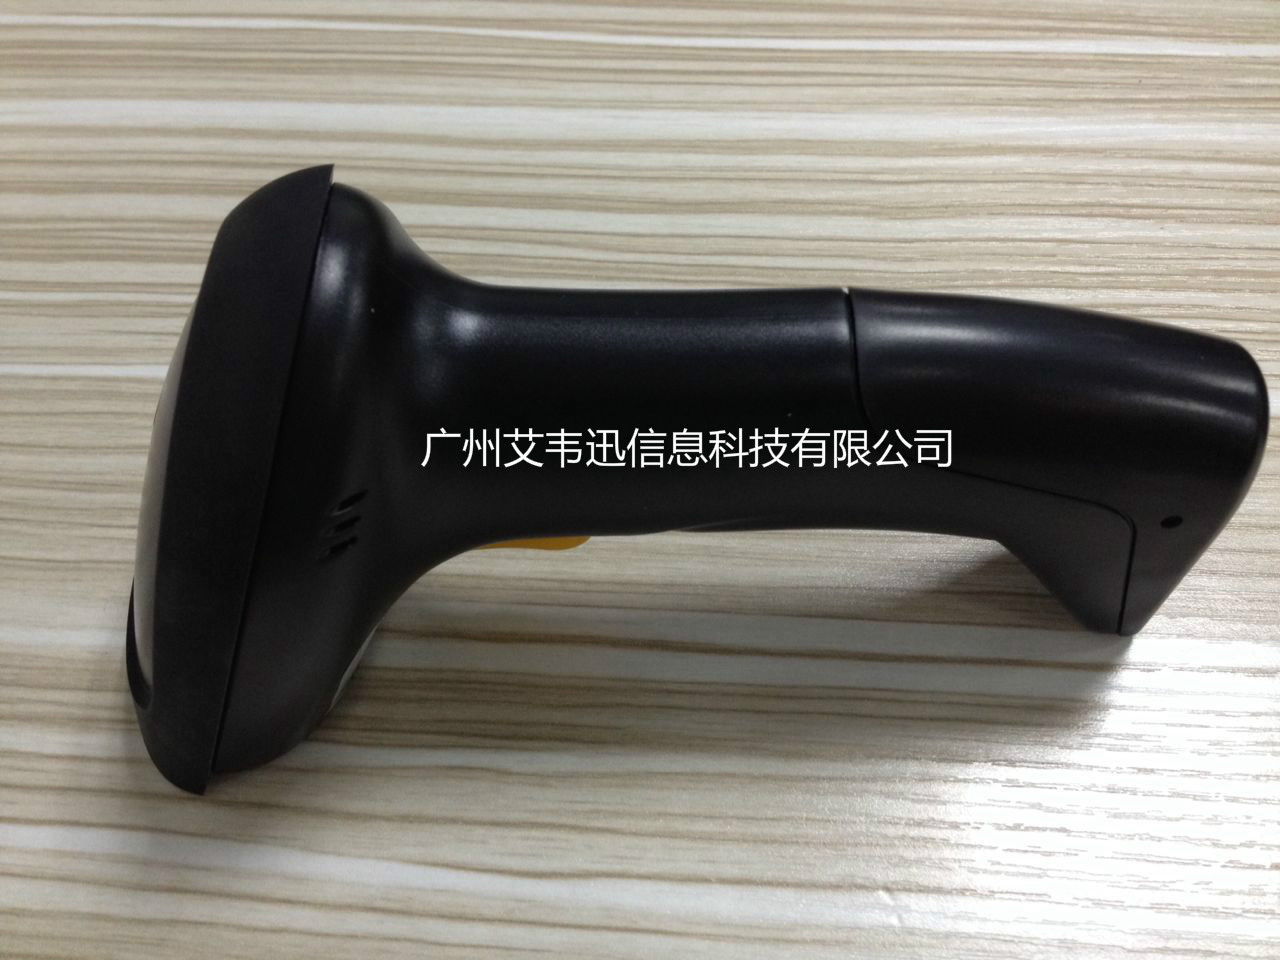 售出一批32位高速条码扫描器IVY-2810到广州某计算机科技有限公司